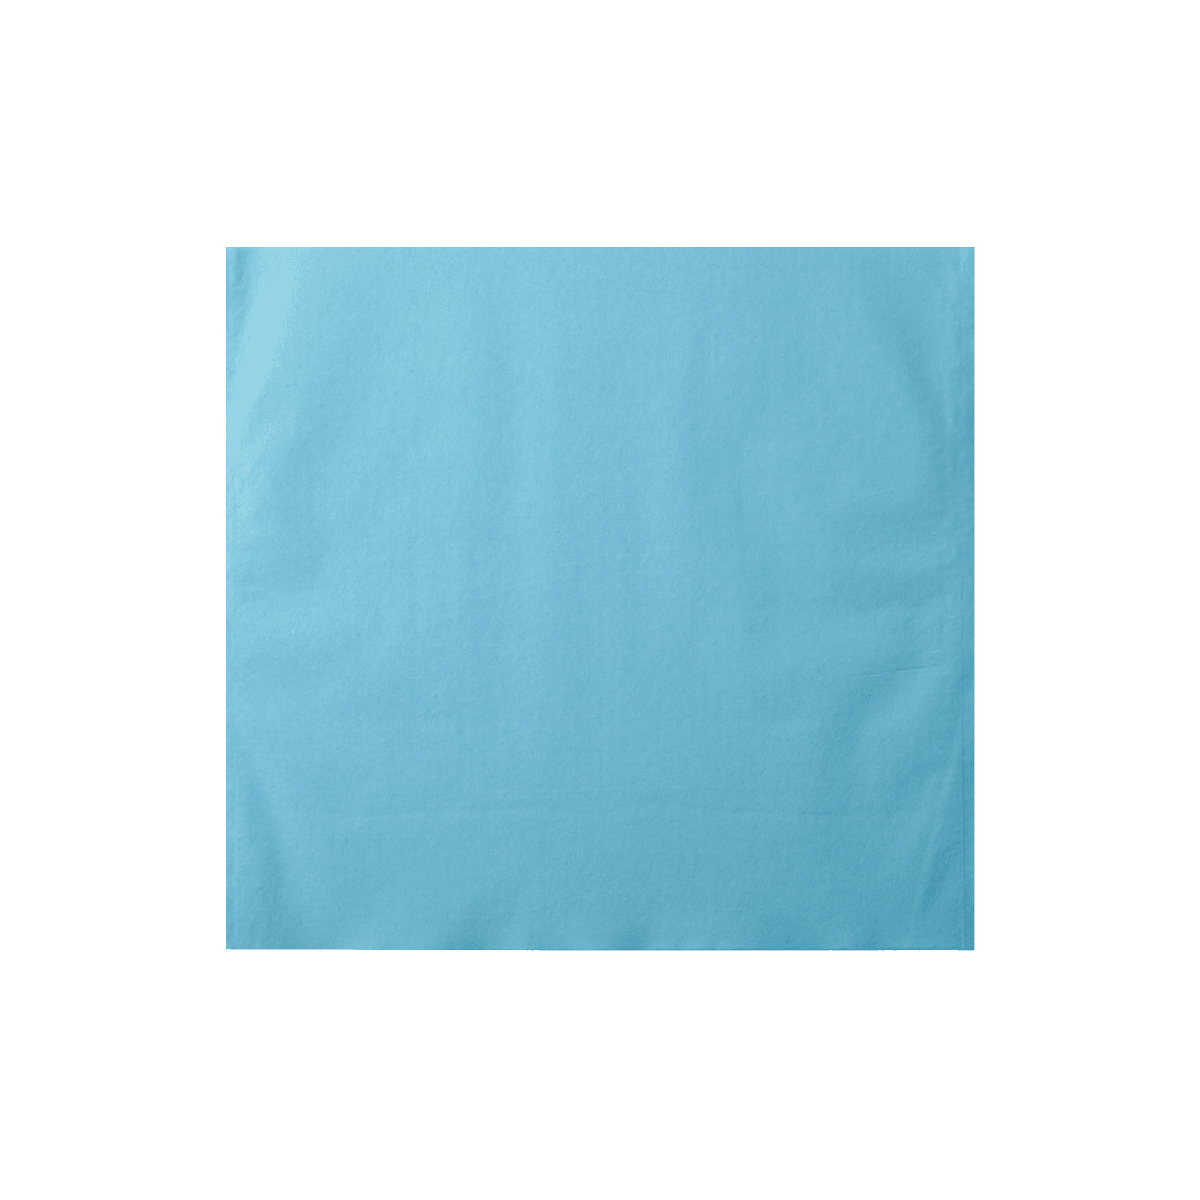 Monoart Kopfschutztaschen 28 x 30 cm Farbe: hellblau (Euronda)